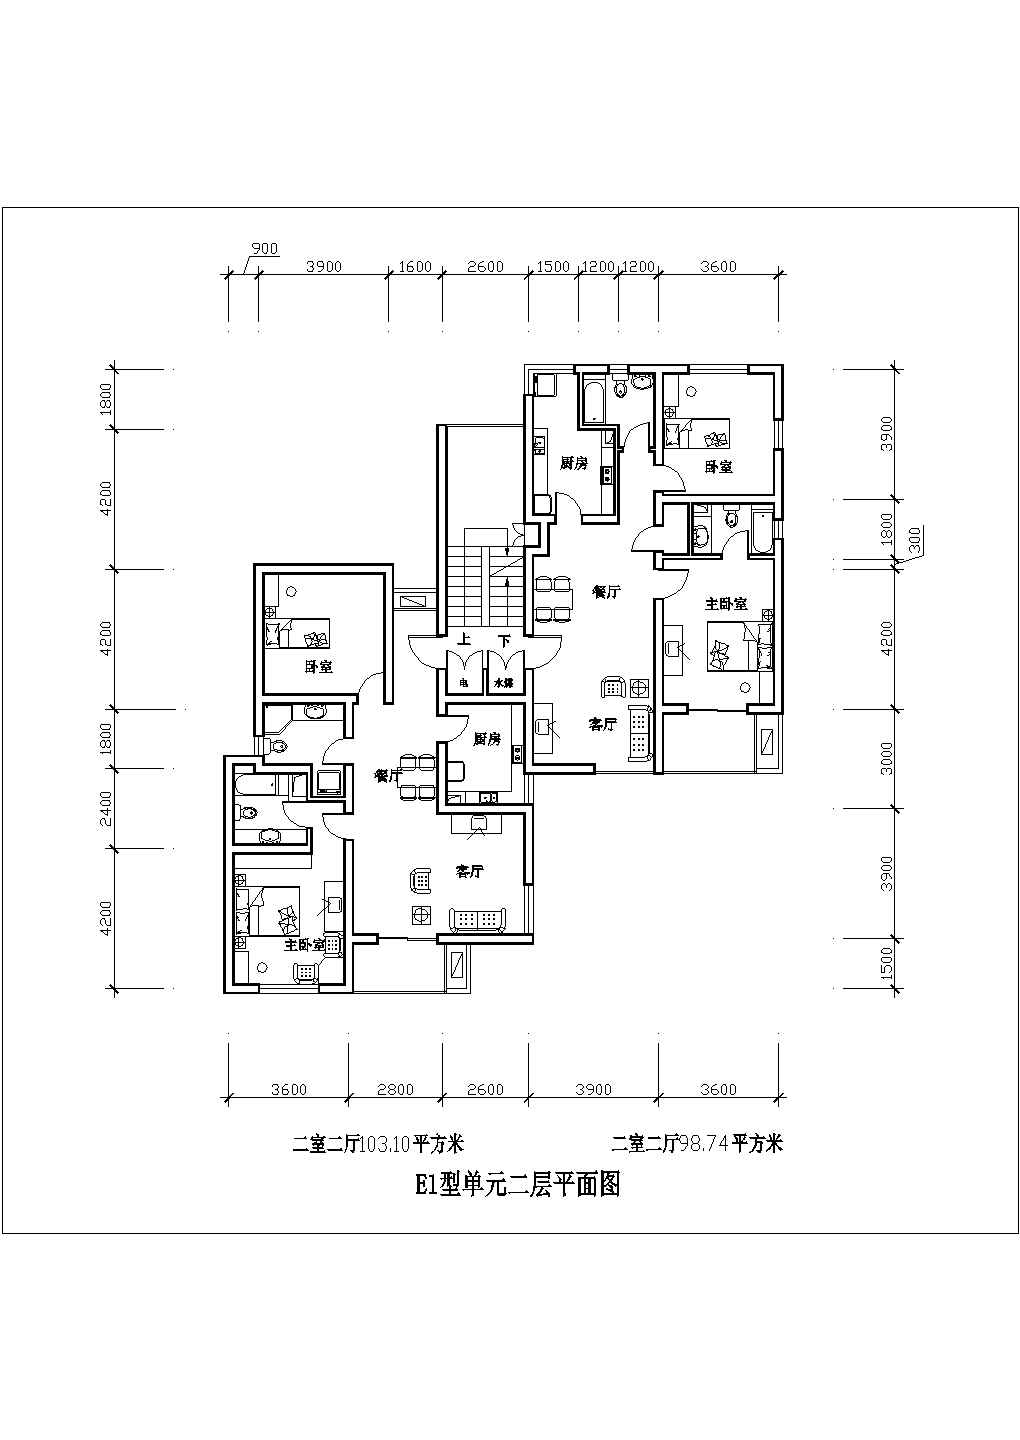 某二室二厅103平米平立面CAD图纸